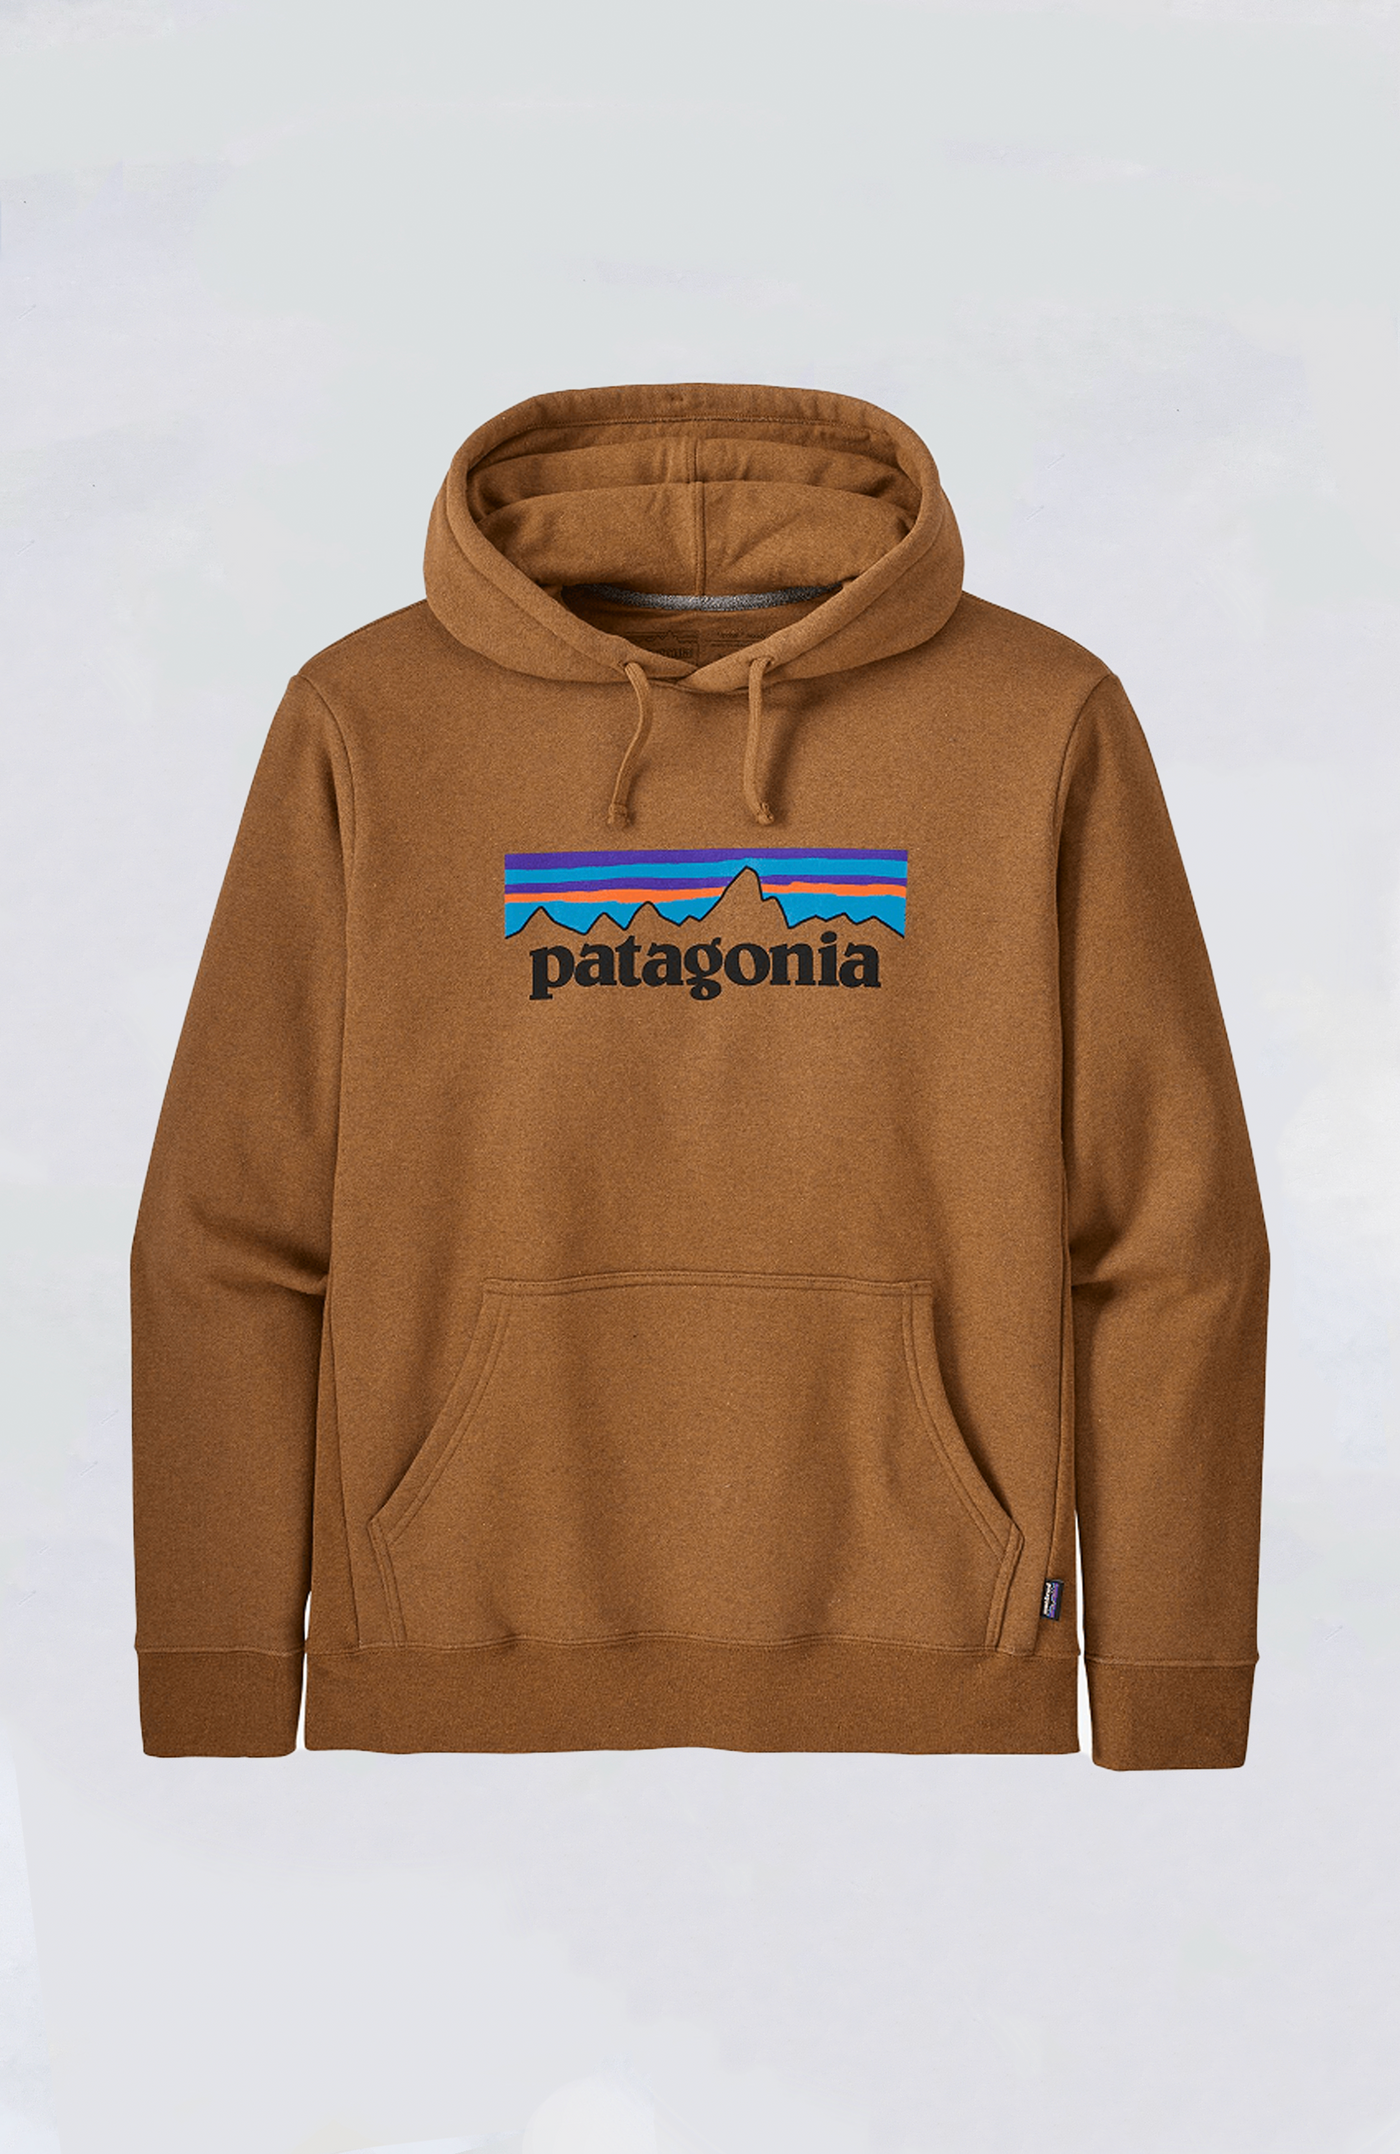 Patagonia - M's P-6 Logo Uprisal Hoody